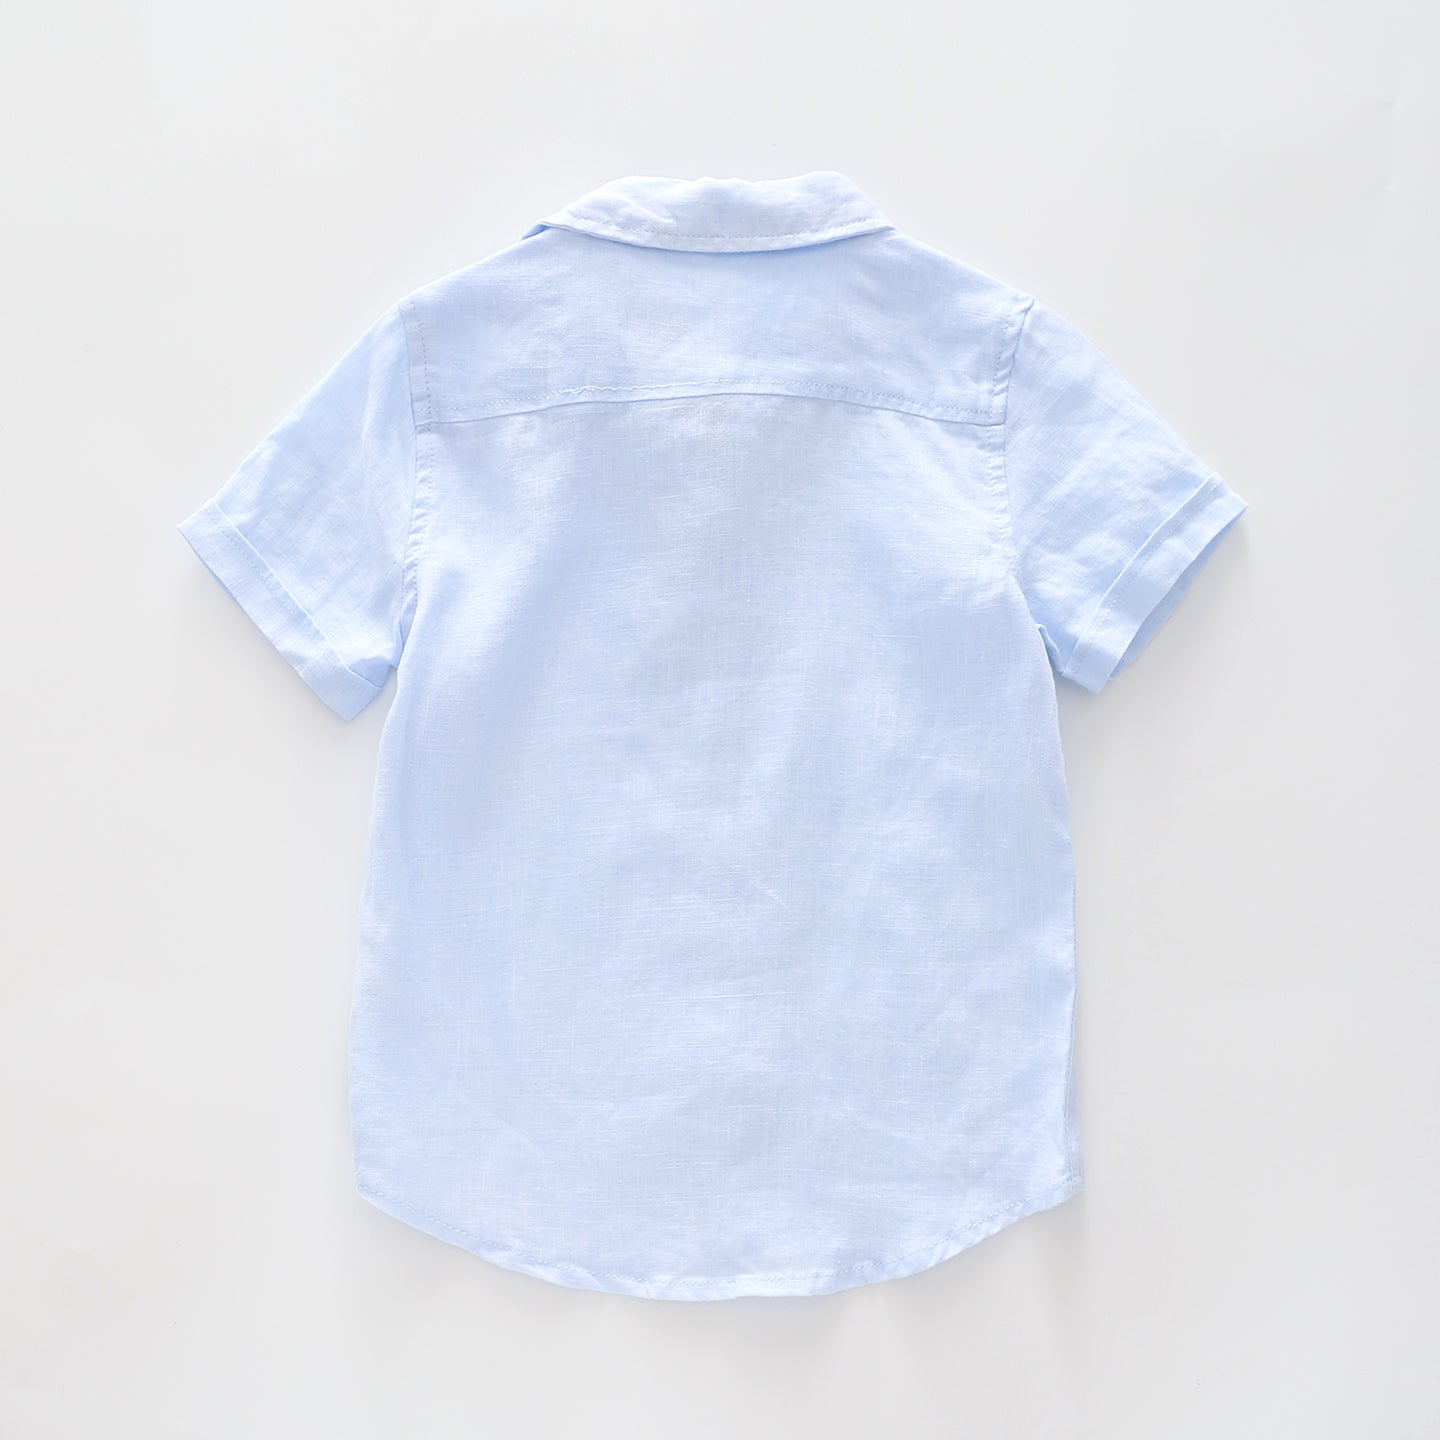 Boy's Baby Blue Linen Collared Shirt